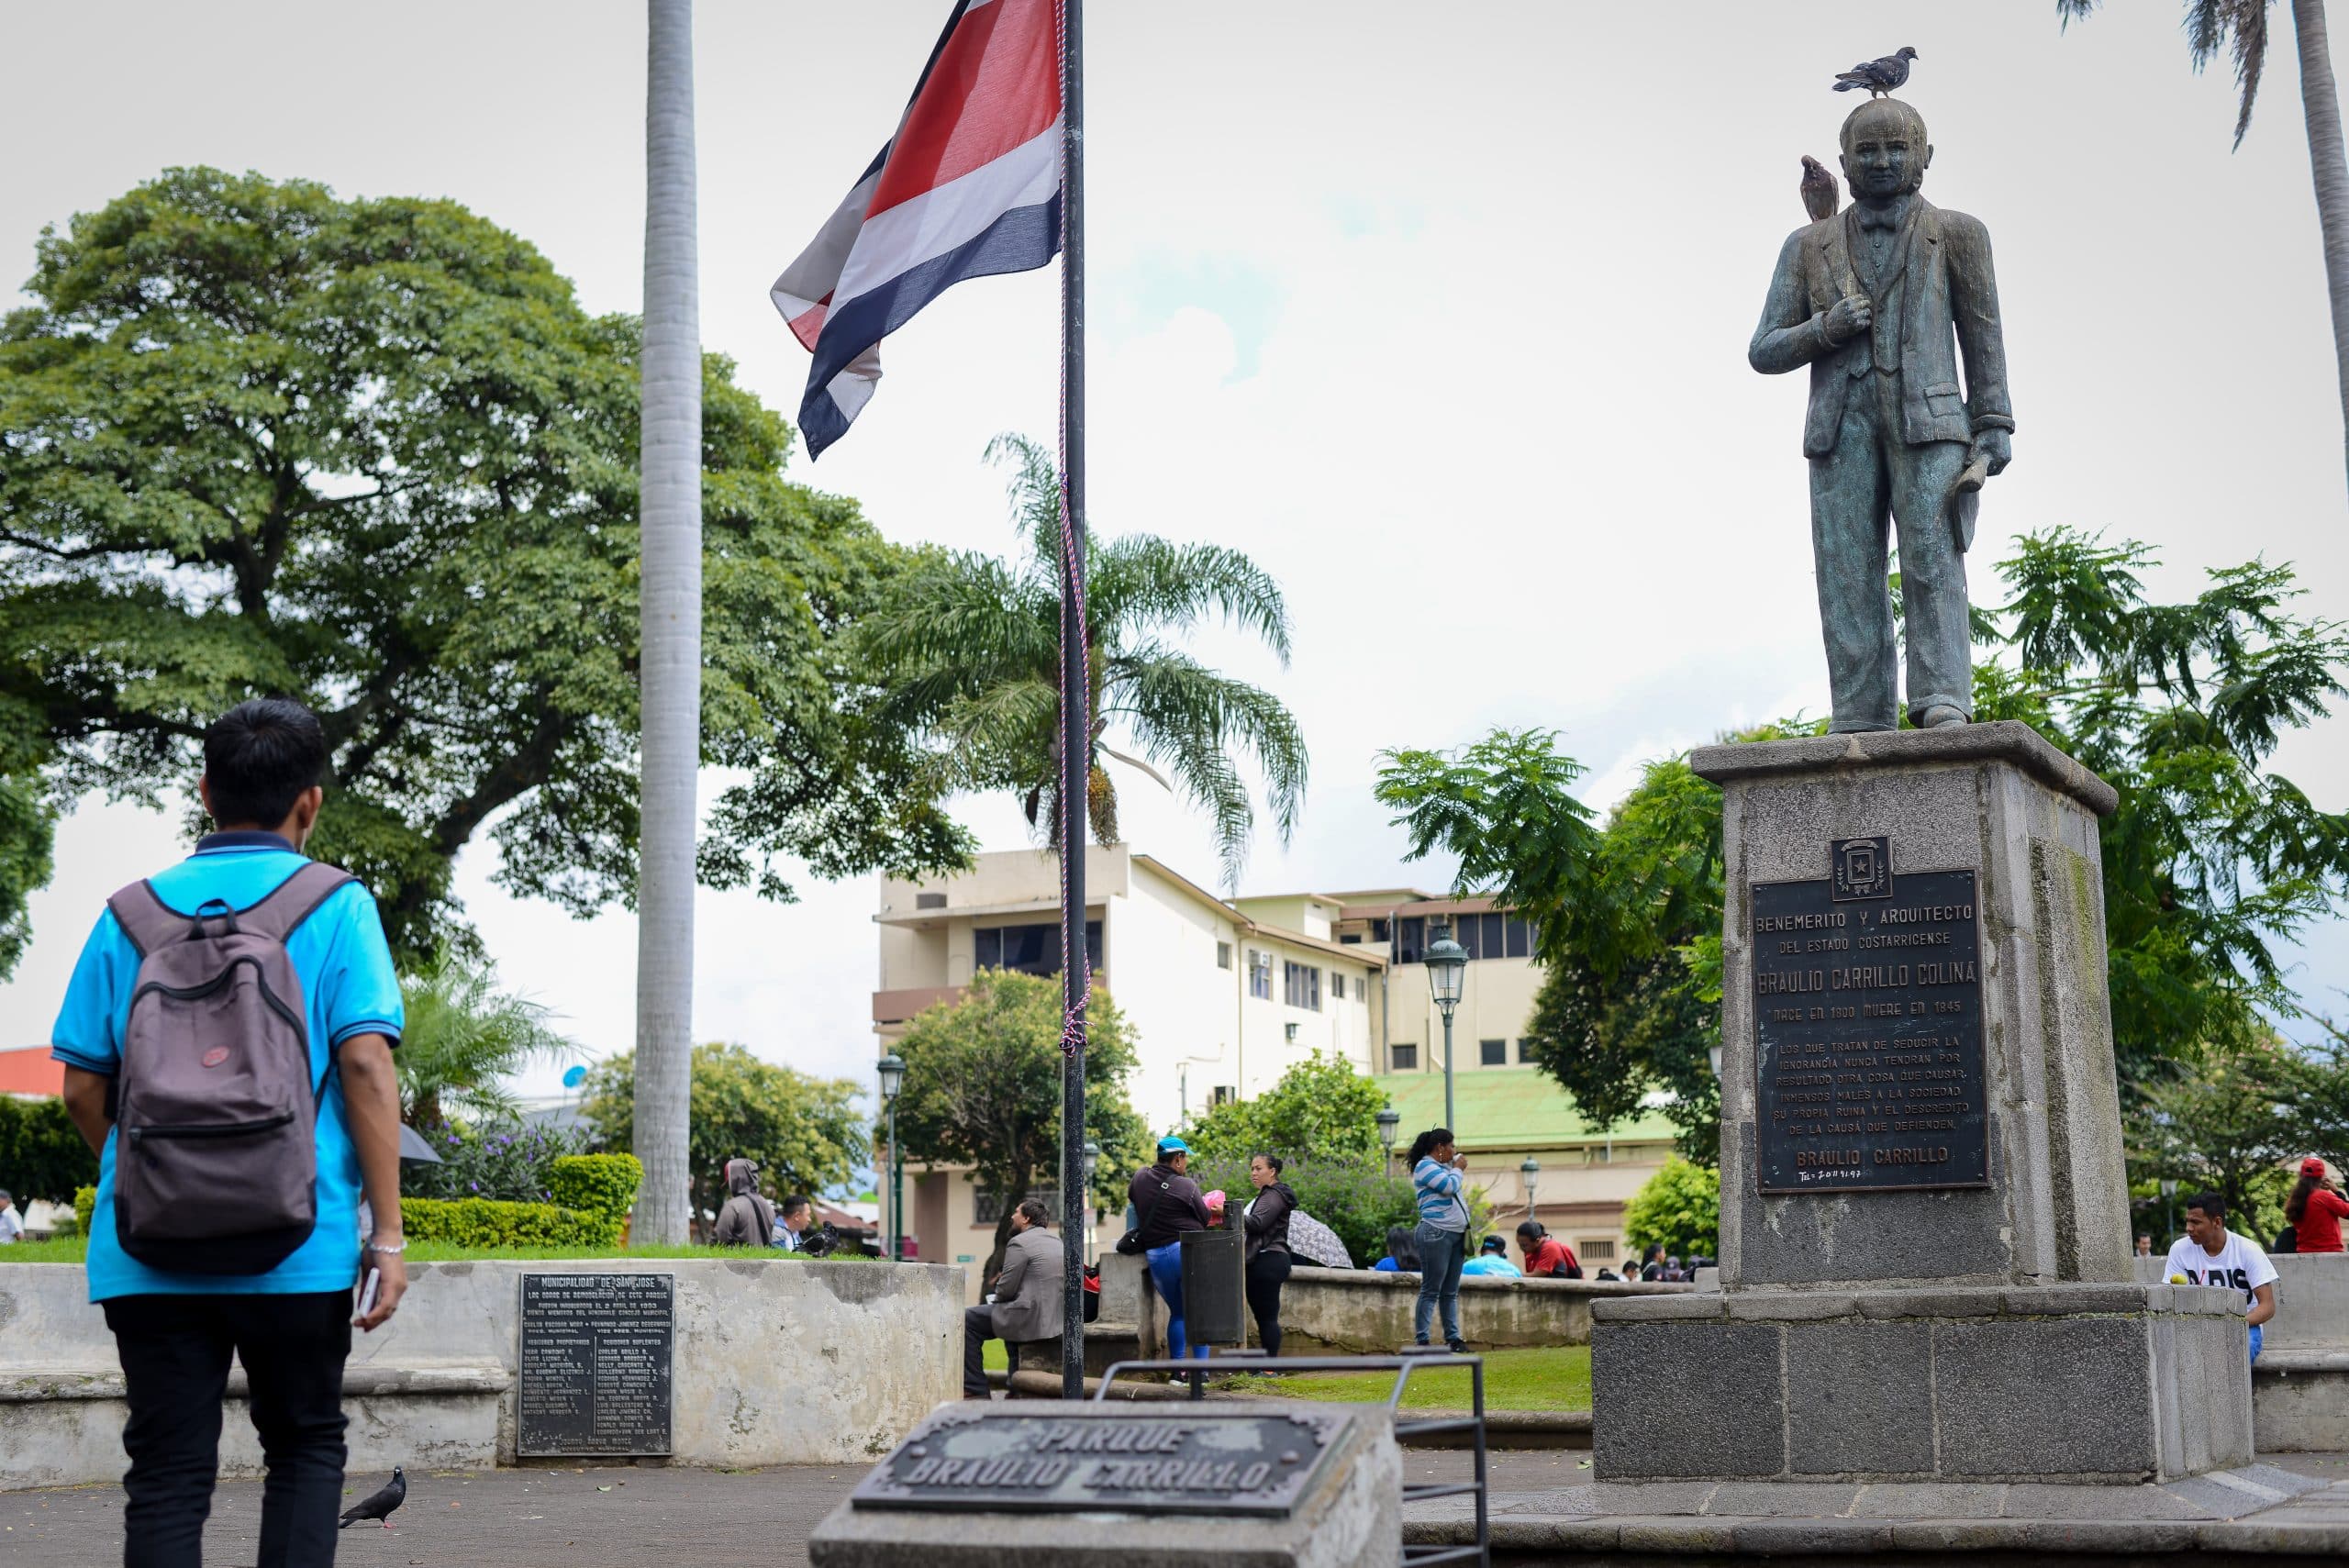 Parque Braulio Carrillo, conocido popularmente en Costa Rica como Parque de la Merced o Parque de los nicaragüenses. San José, Costa Rica 2019. Foto: Confidencial.